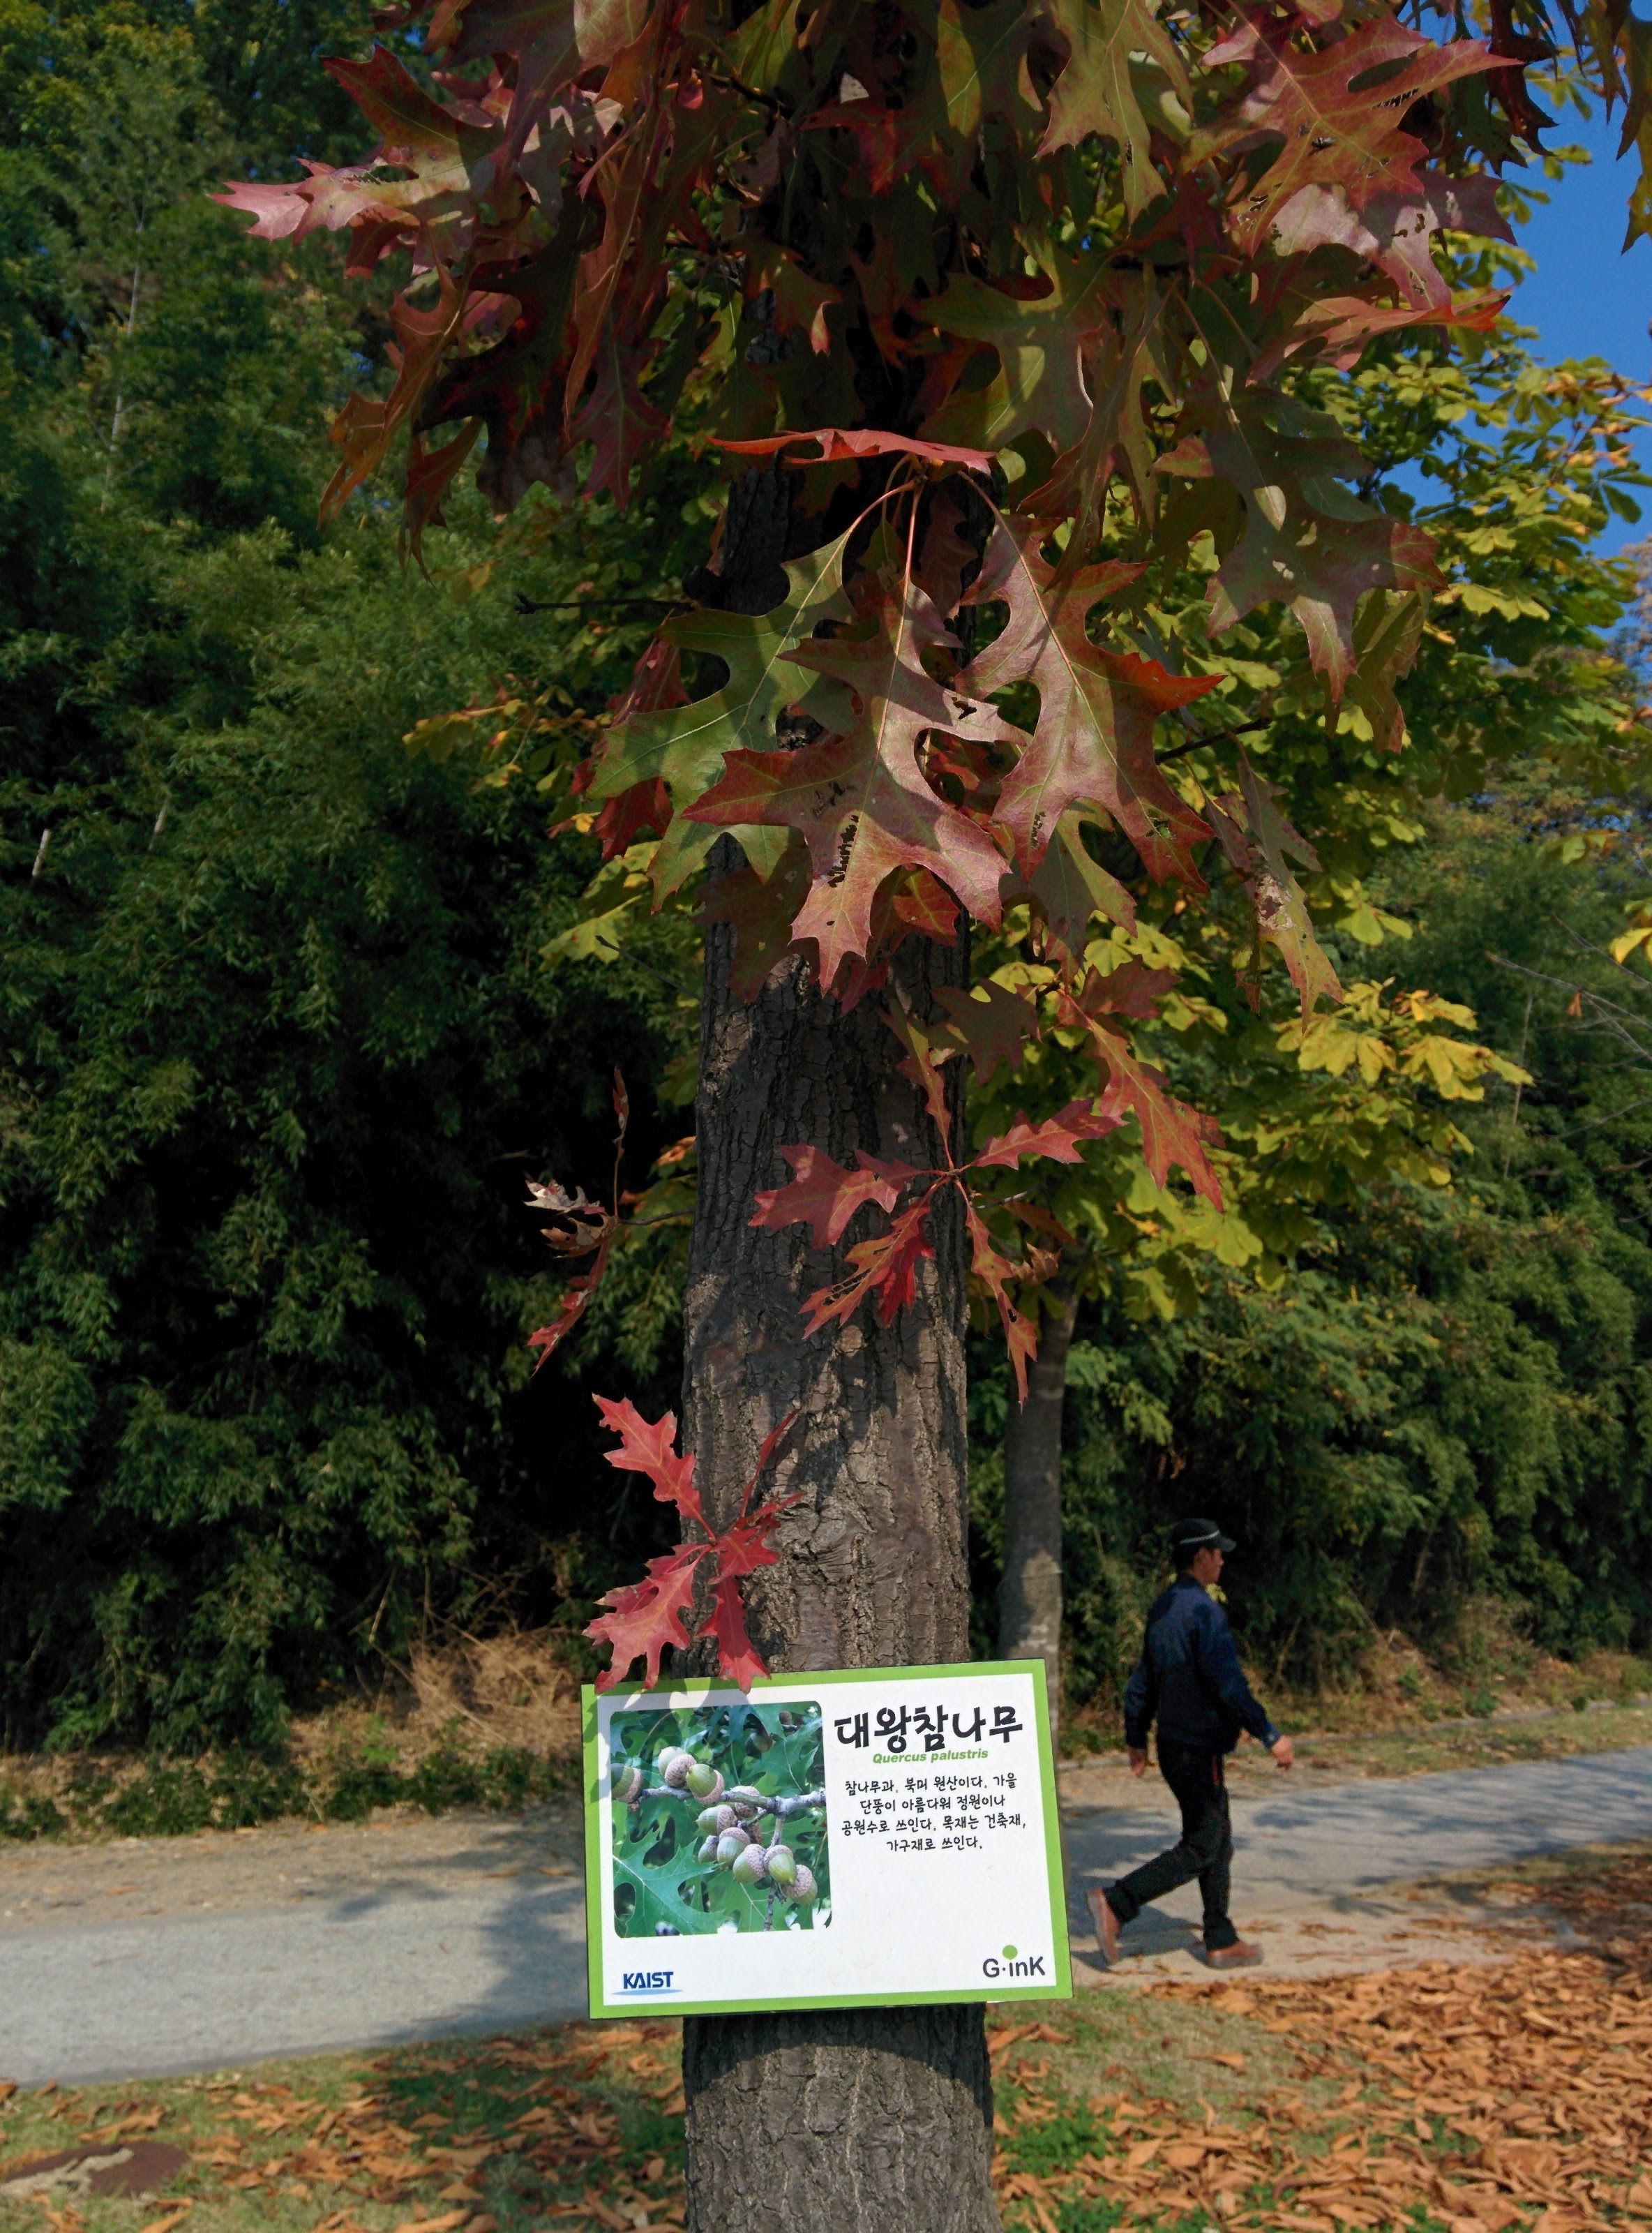 IMG_20151029_120902.jpg 드디어 이름을 알게 된 이쁜 단풍잎 나무... 대왕참나무